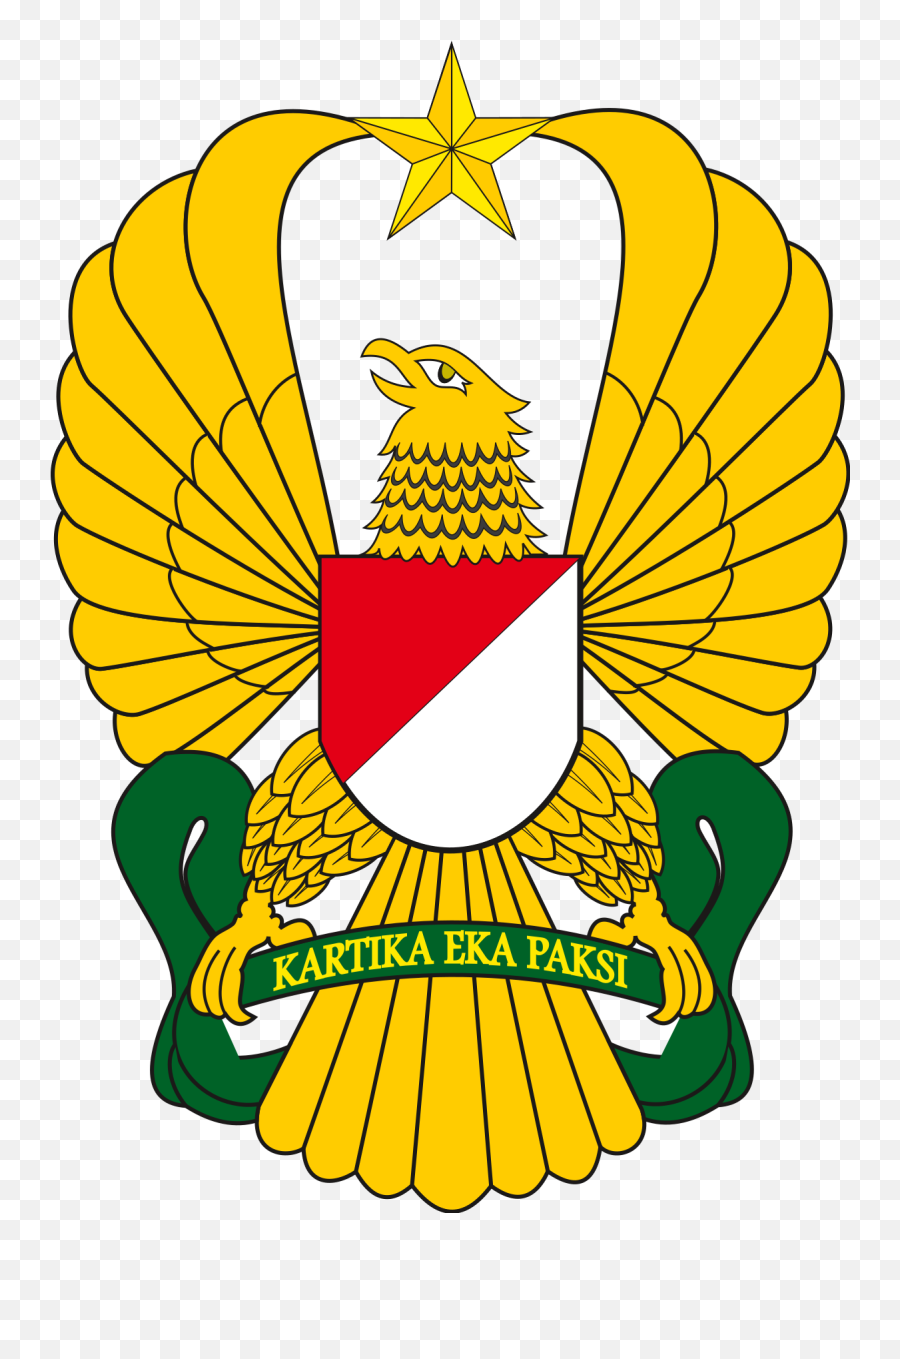 Indonesian Army - Wikipedia Arti Dari Kartika Eka Paksi Png,Vietnam Helmet Png